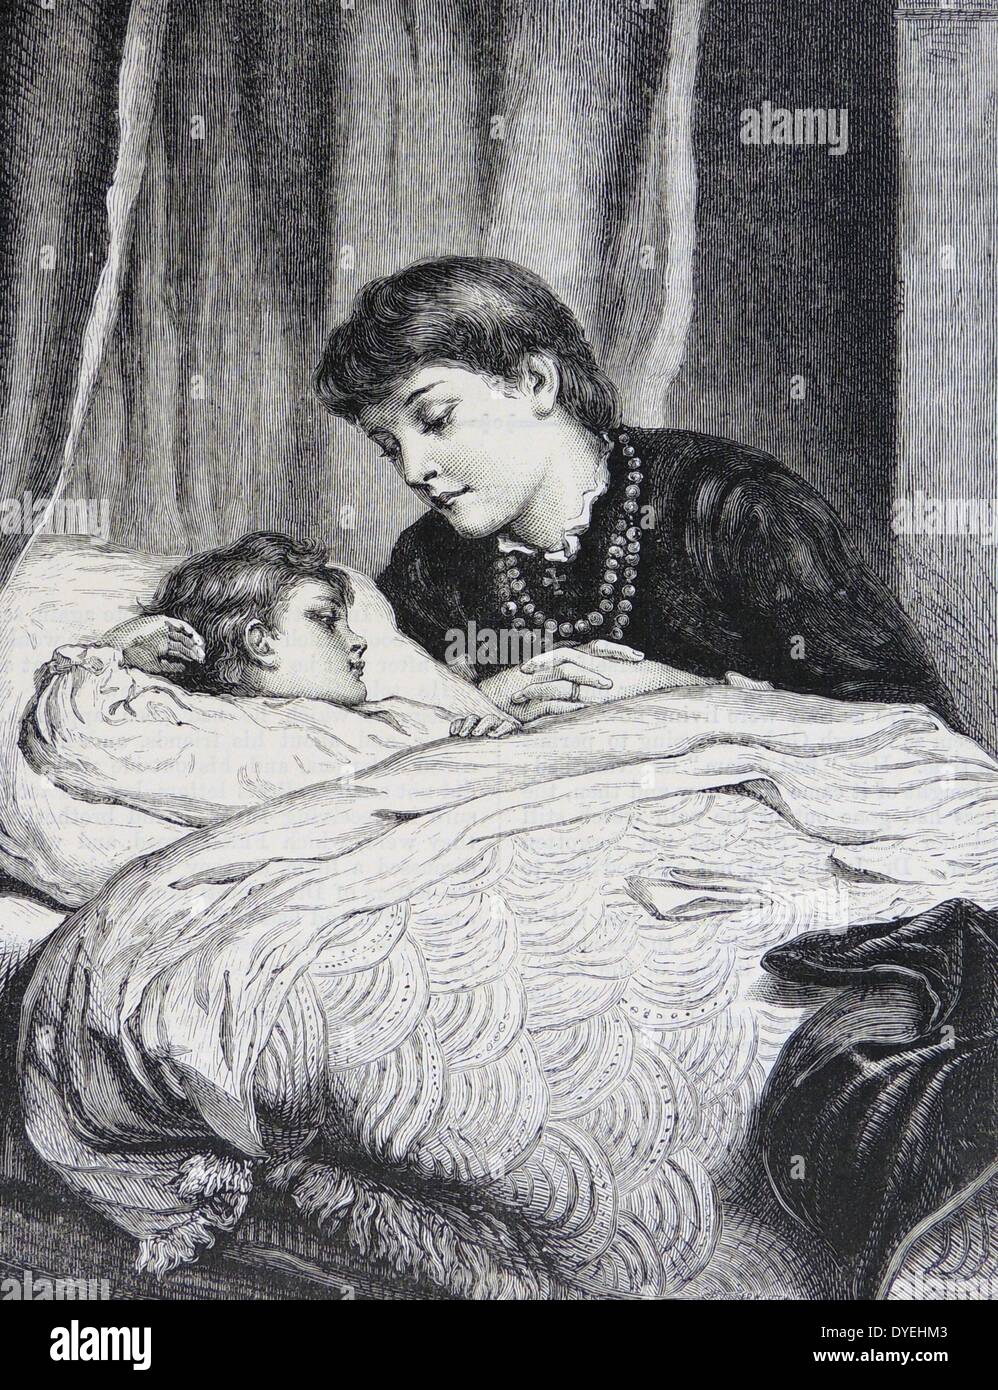 Mother's Darling' - gravure après la peinture de Joseph Clark (1834-1926) publié à Londres, 1886. Mère dire bonne nuit à son enfant. Courtepointe Shell est sur le lit. Banque D'Images